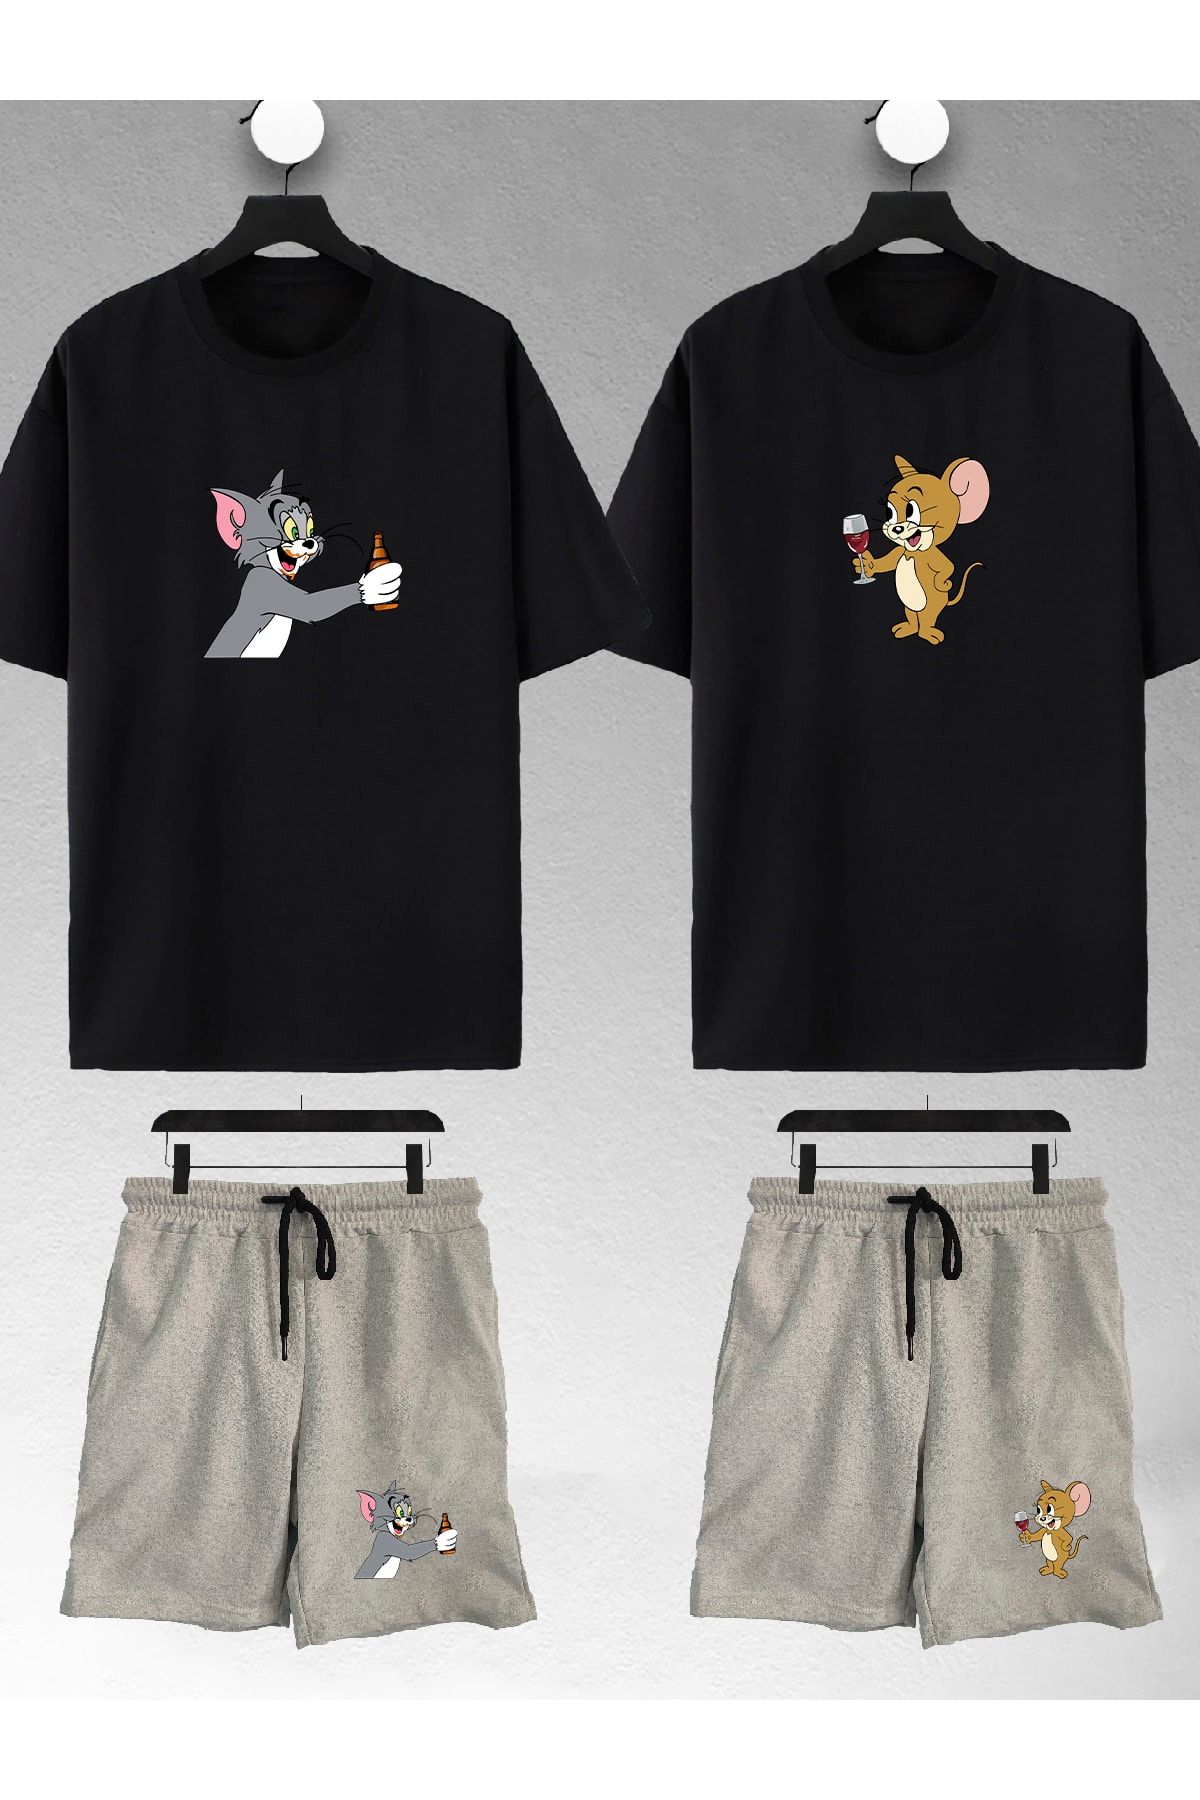 macklin Unisex Kadın Erkek Bira Tom Ve Jerry Baskılı Sevgili Çift Kombini Tasarım Oversize Tshirt Ve Şort